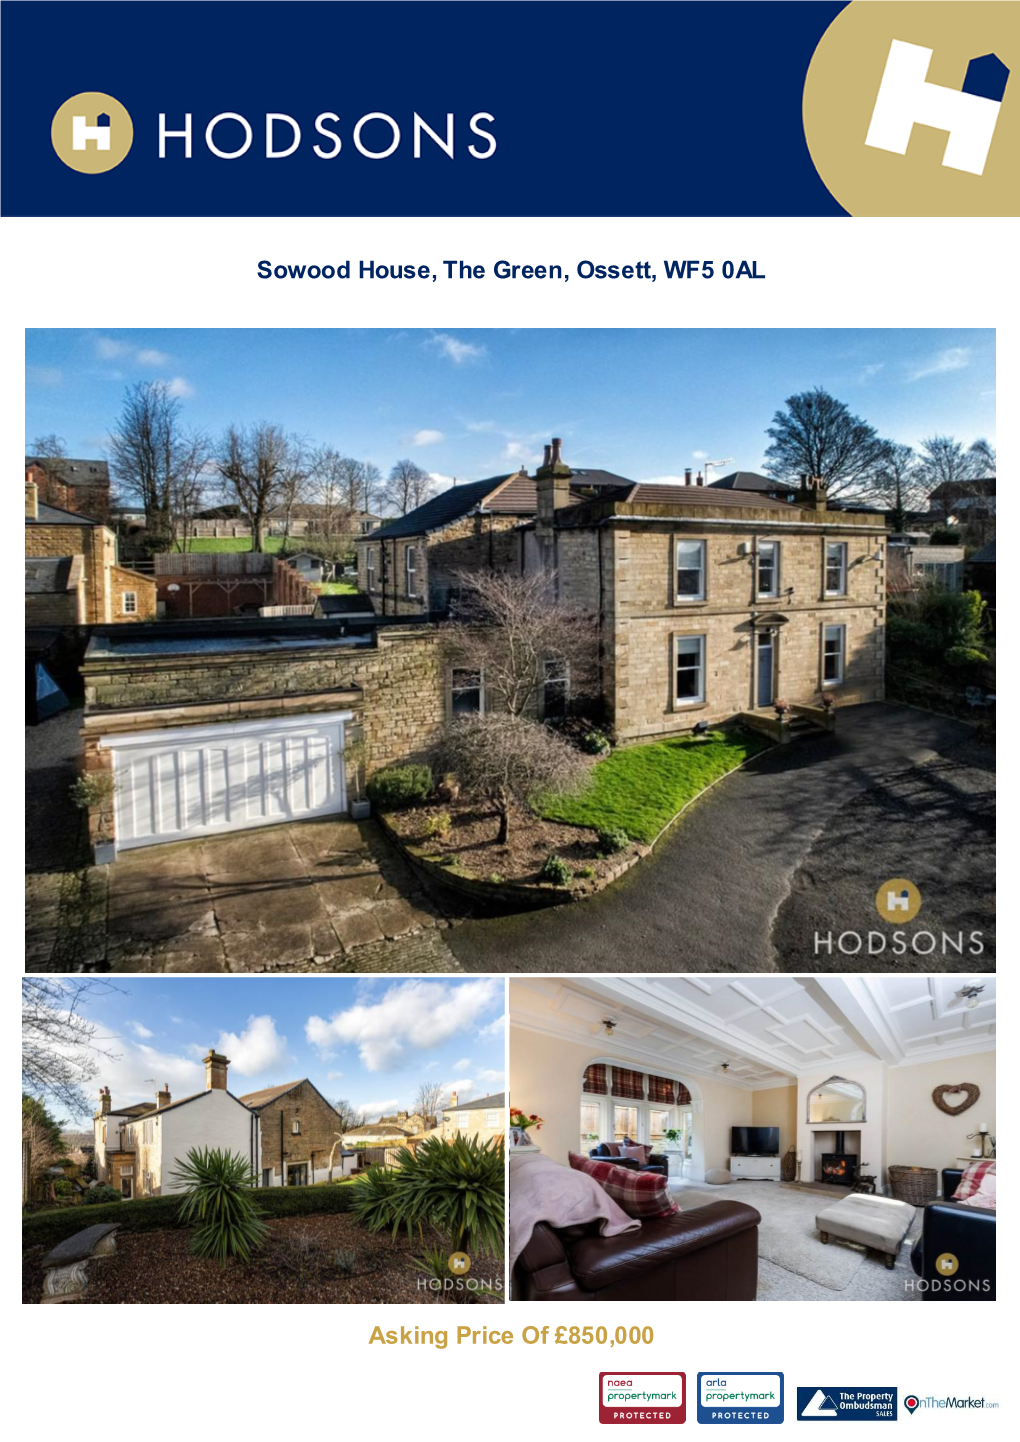 Sowood House, the Green, Ossett, WF5 0AL Asking Price of £850,000